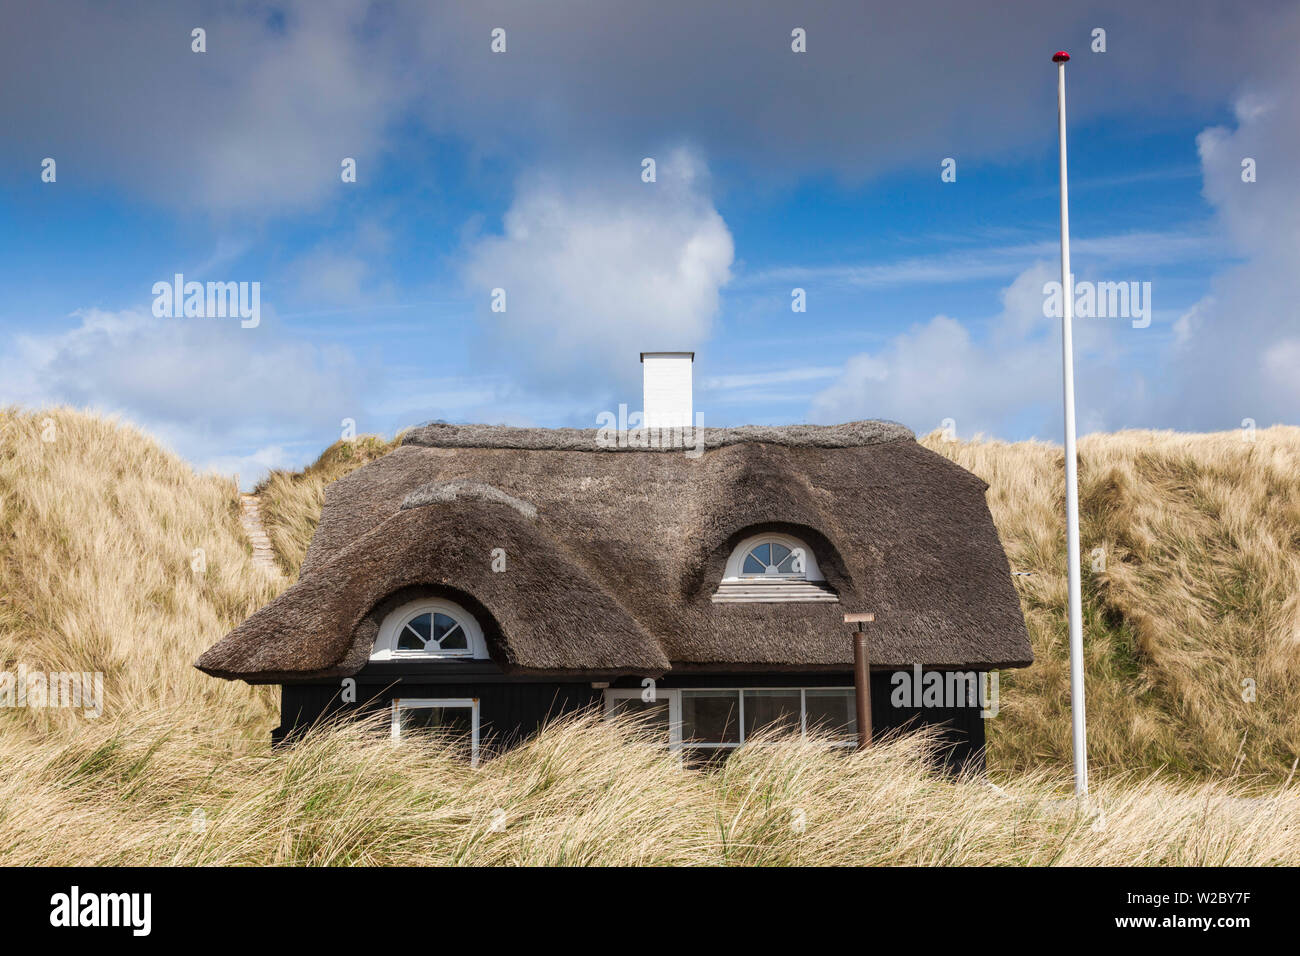 Denmark, Jutland, Klitmoller, windsurfing capital of Denmark, houses in dunes Stock Photo